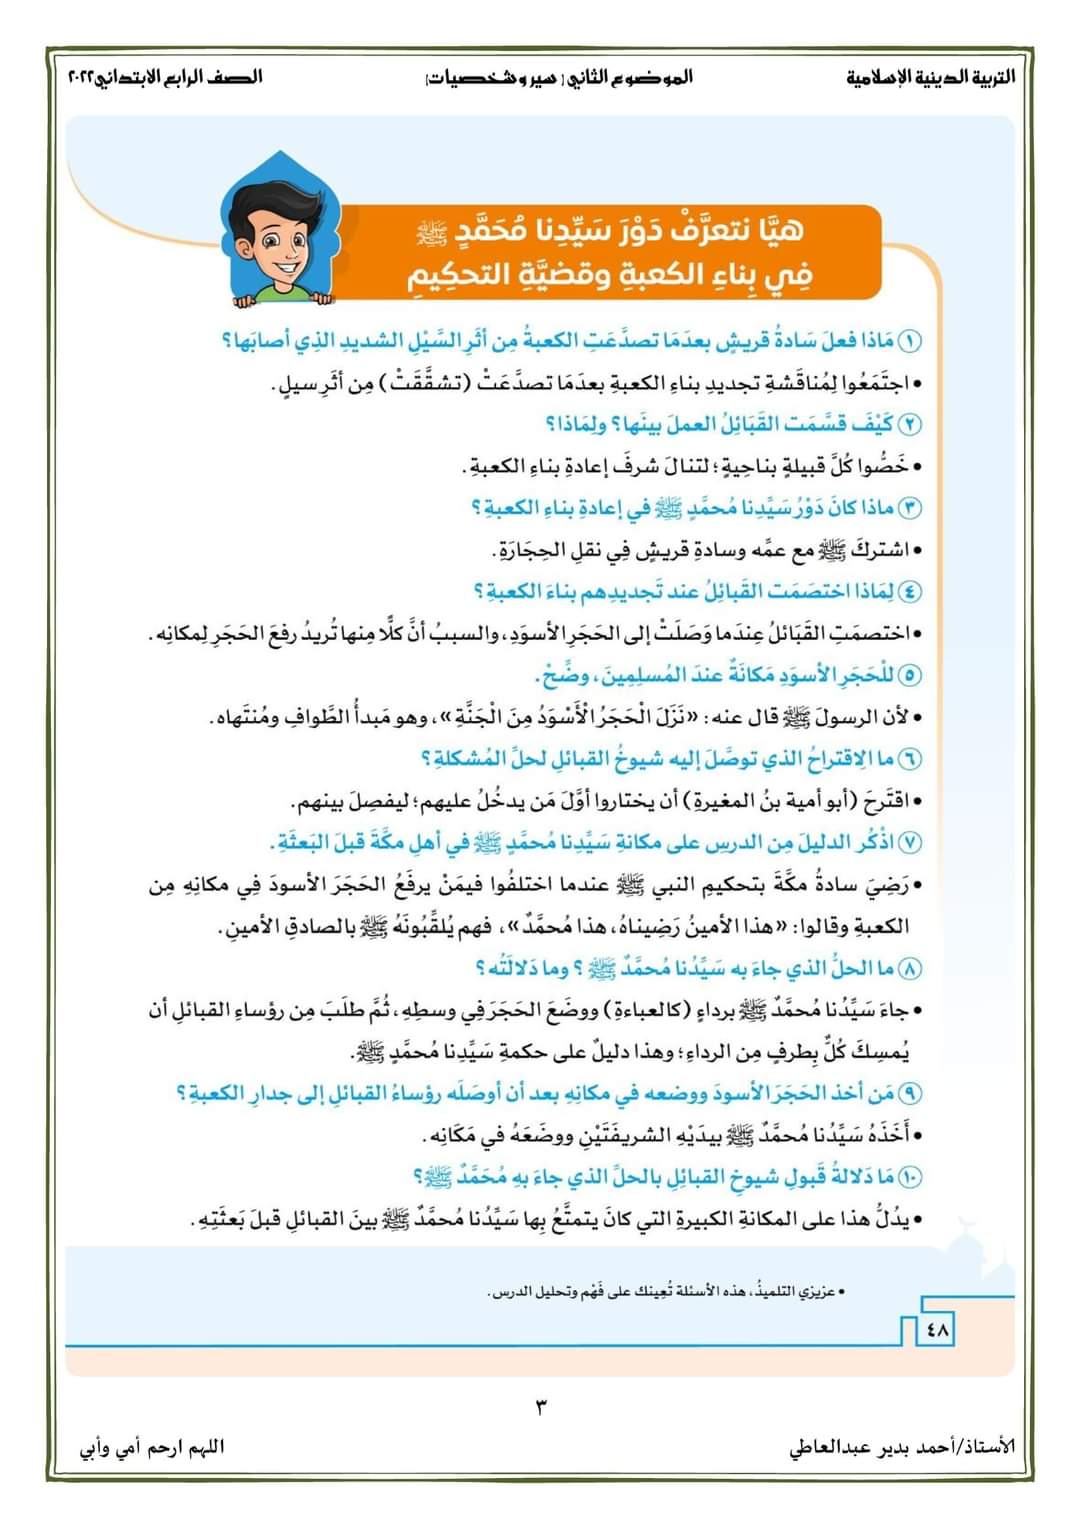 سير وشخصيات تربية اسلامية رابعة ابتدائي - احمد بدير عبد العاطي